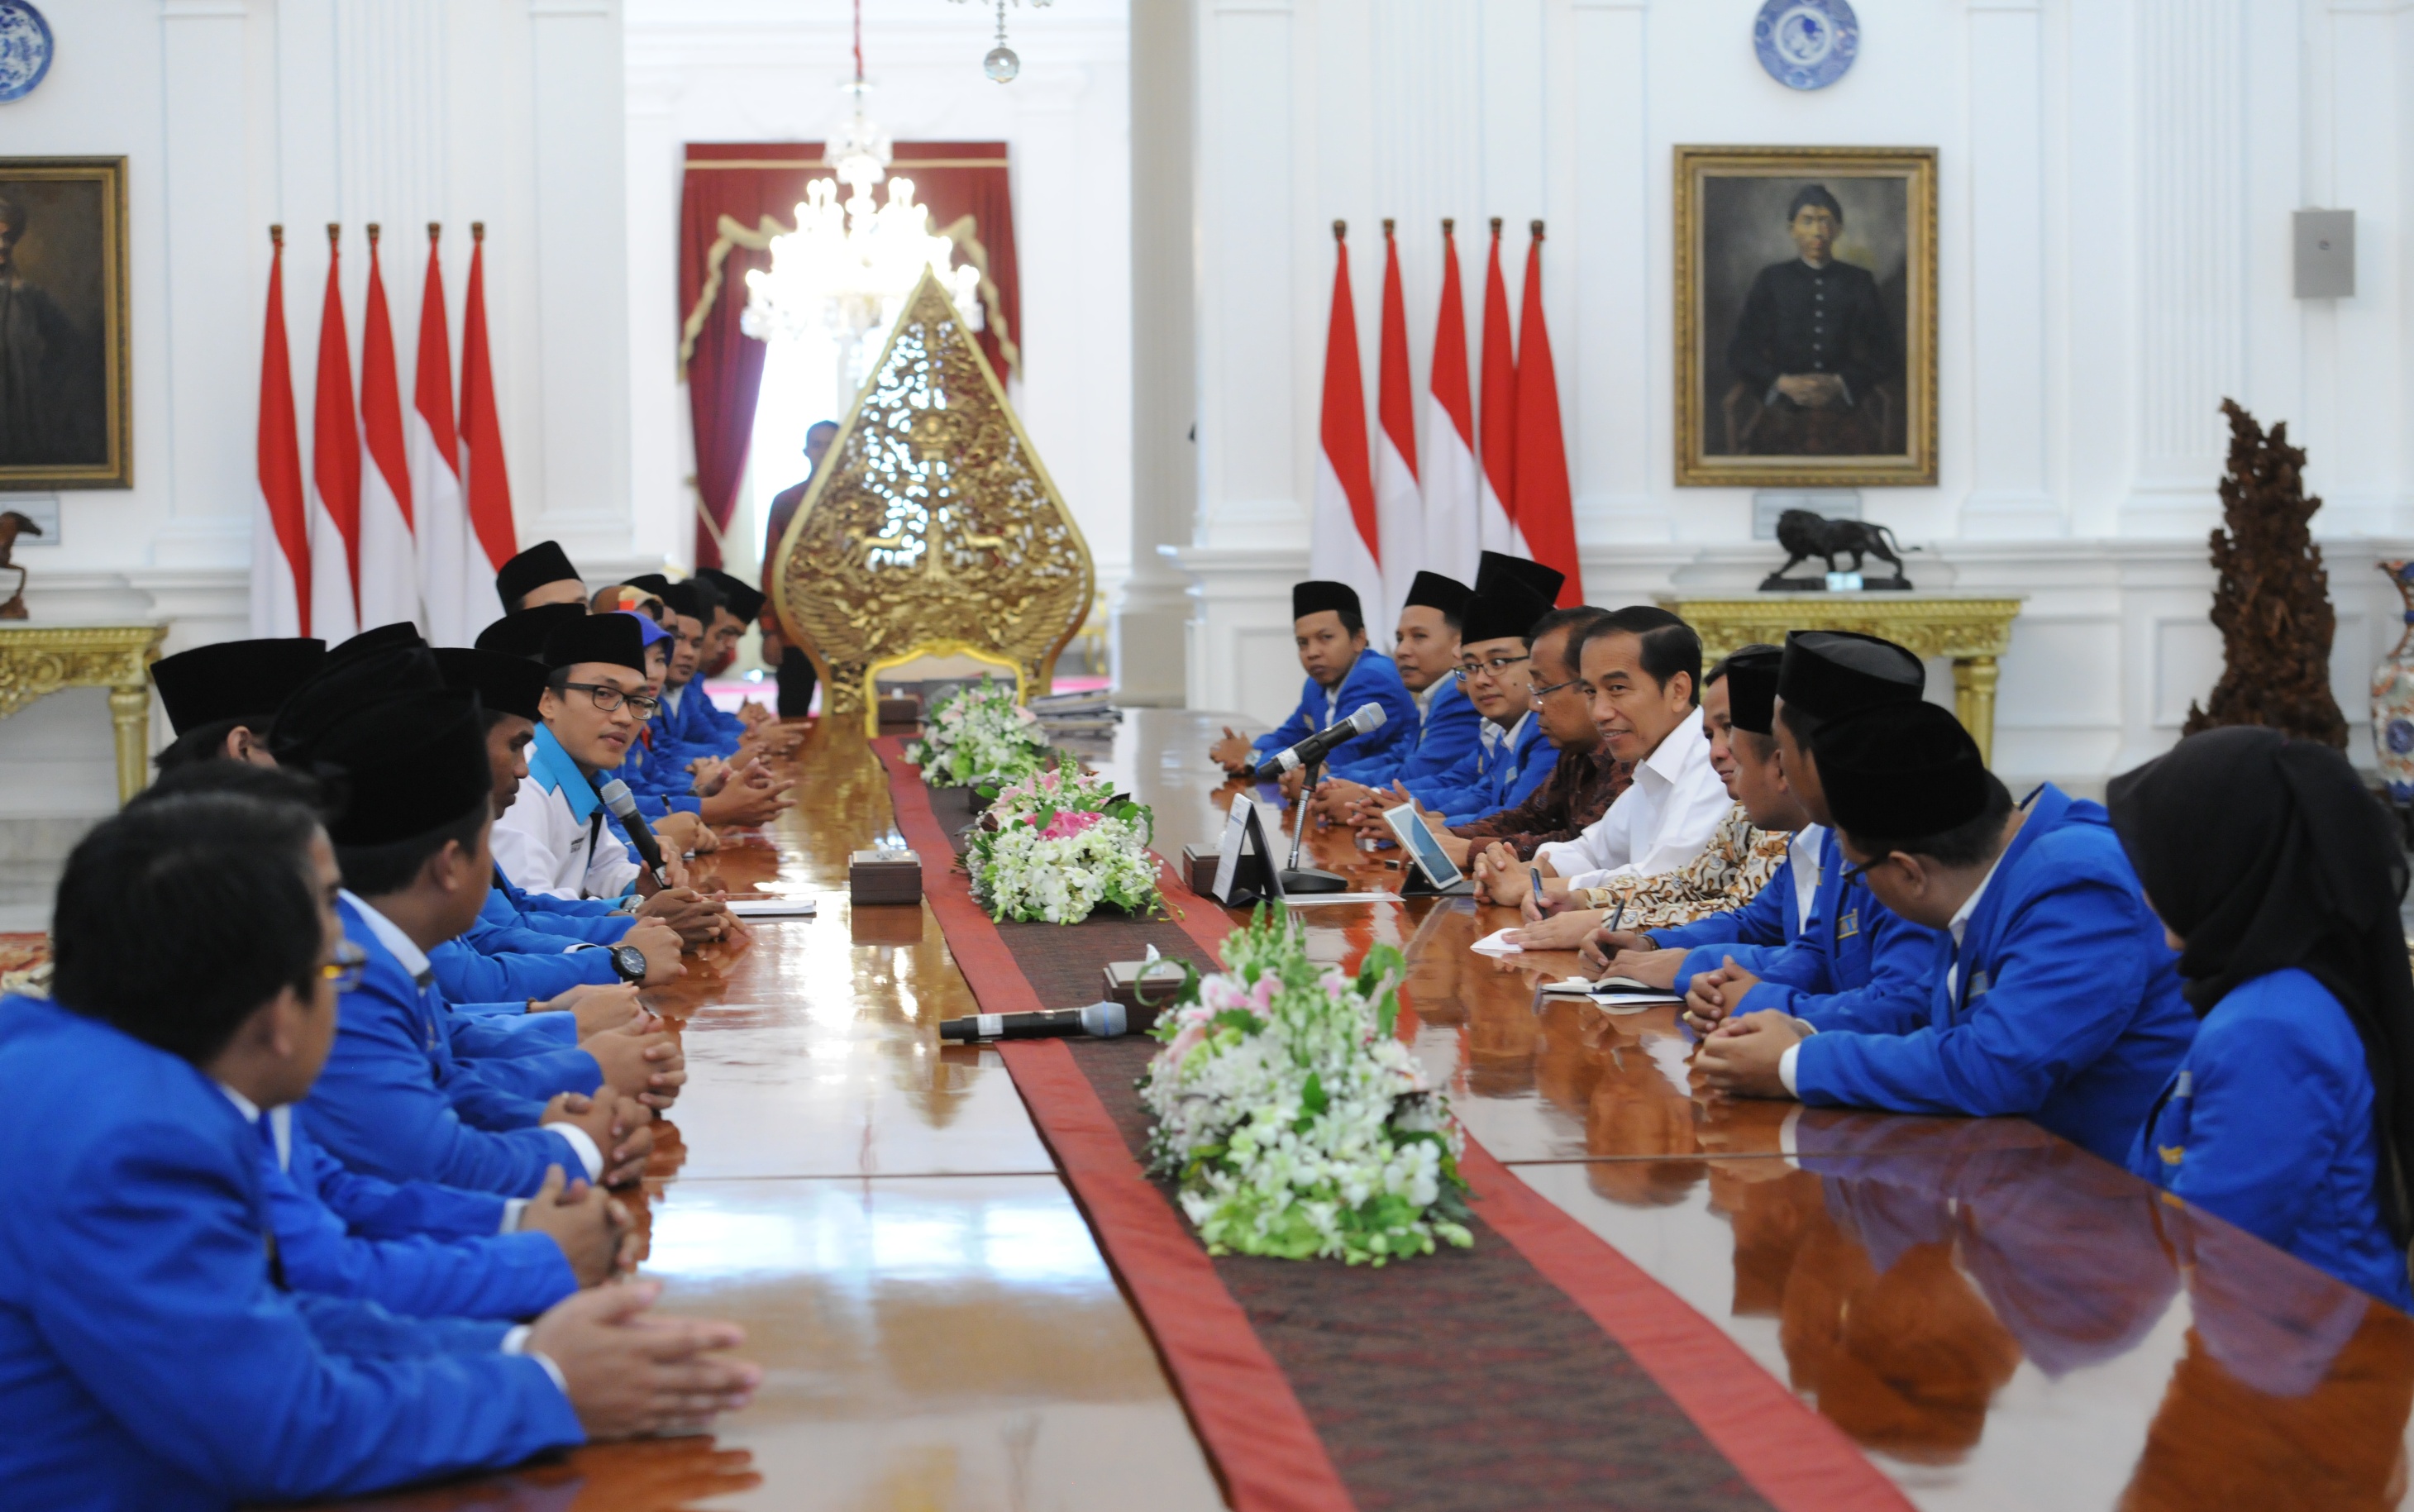 Presiden menerima PB PMII di Istana Merdeka, Jakarta, Jumat (3/2) siang. (Foto: Humas/Jay)